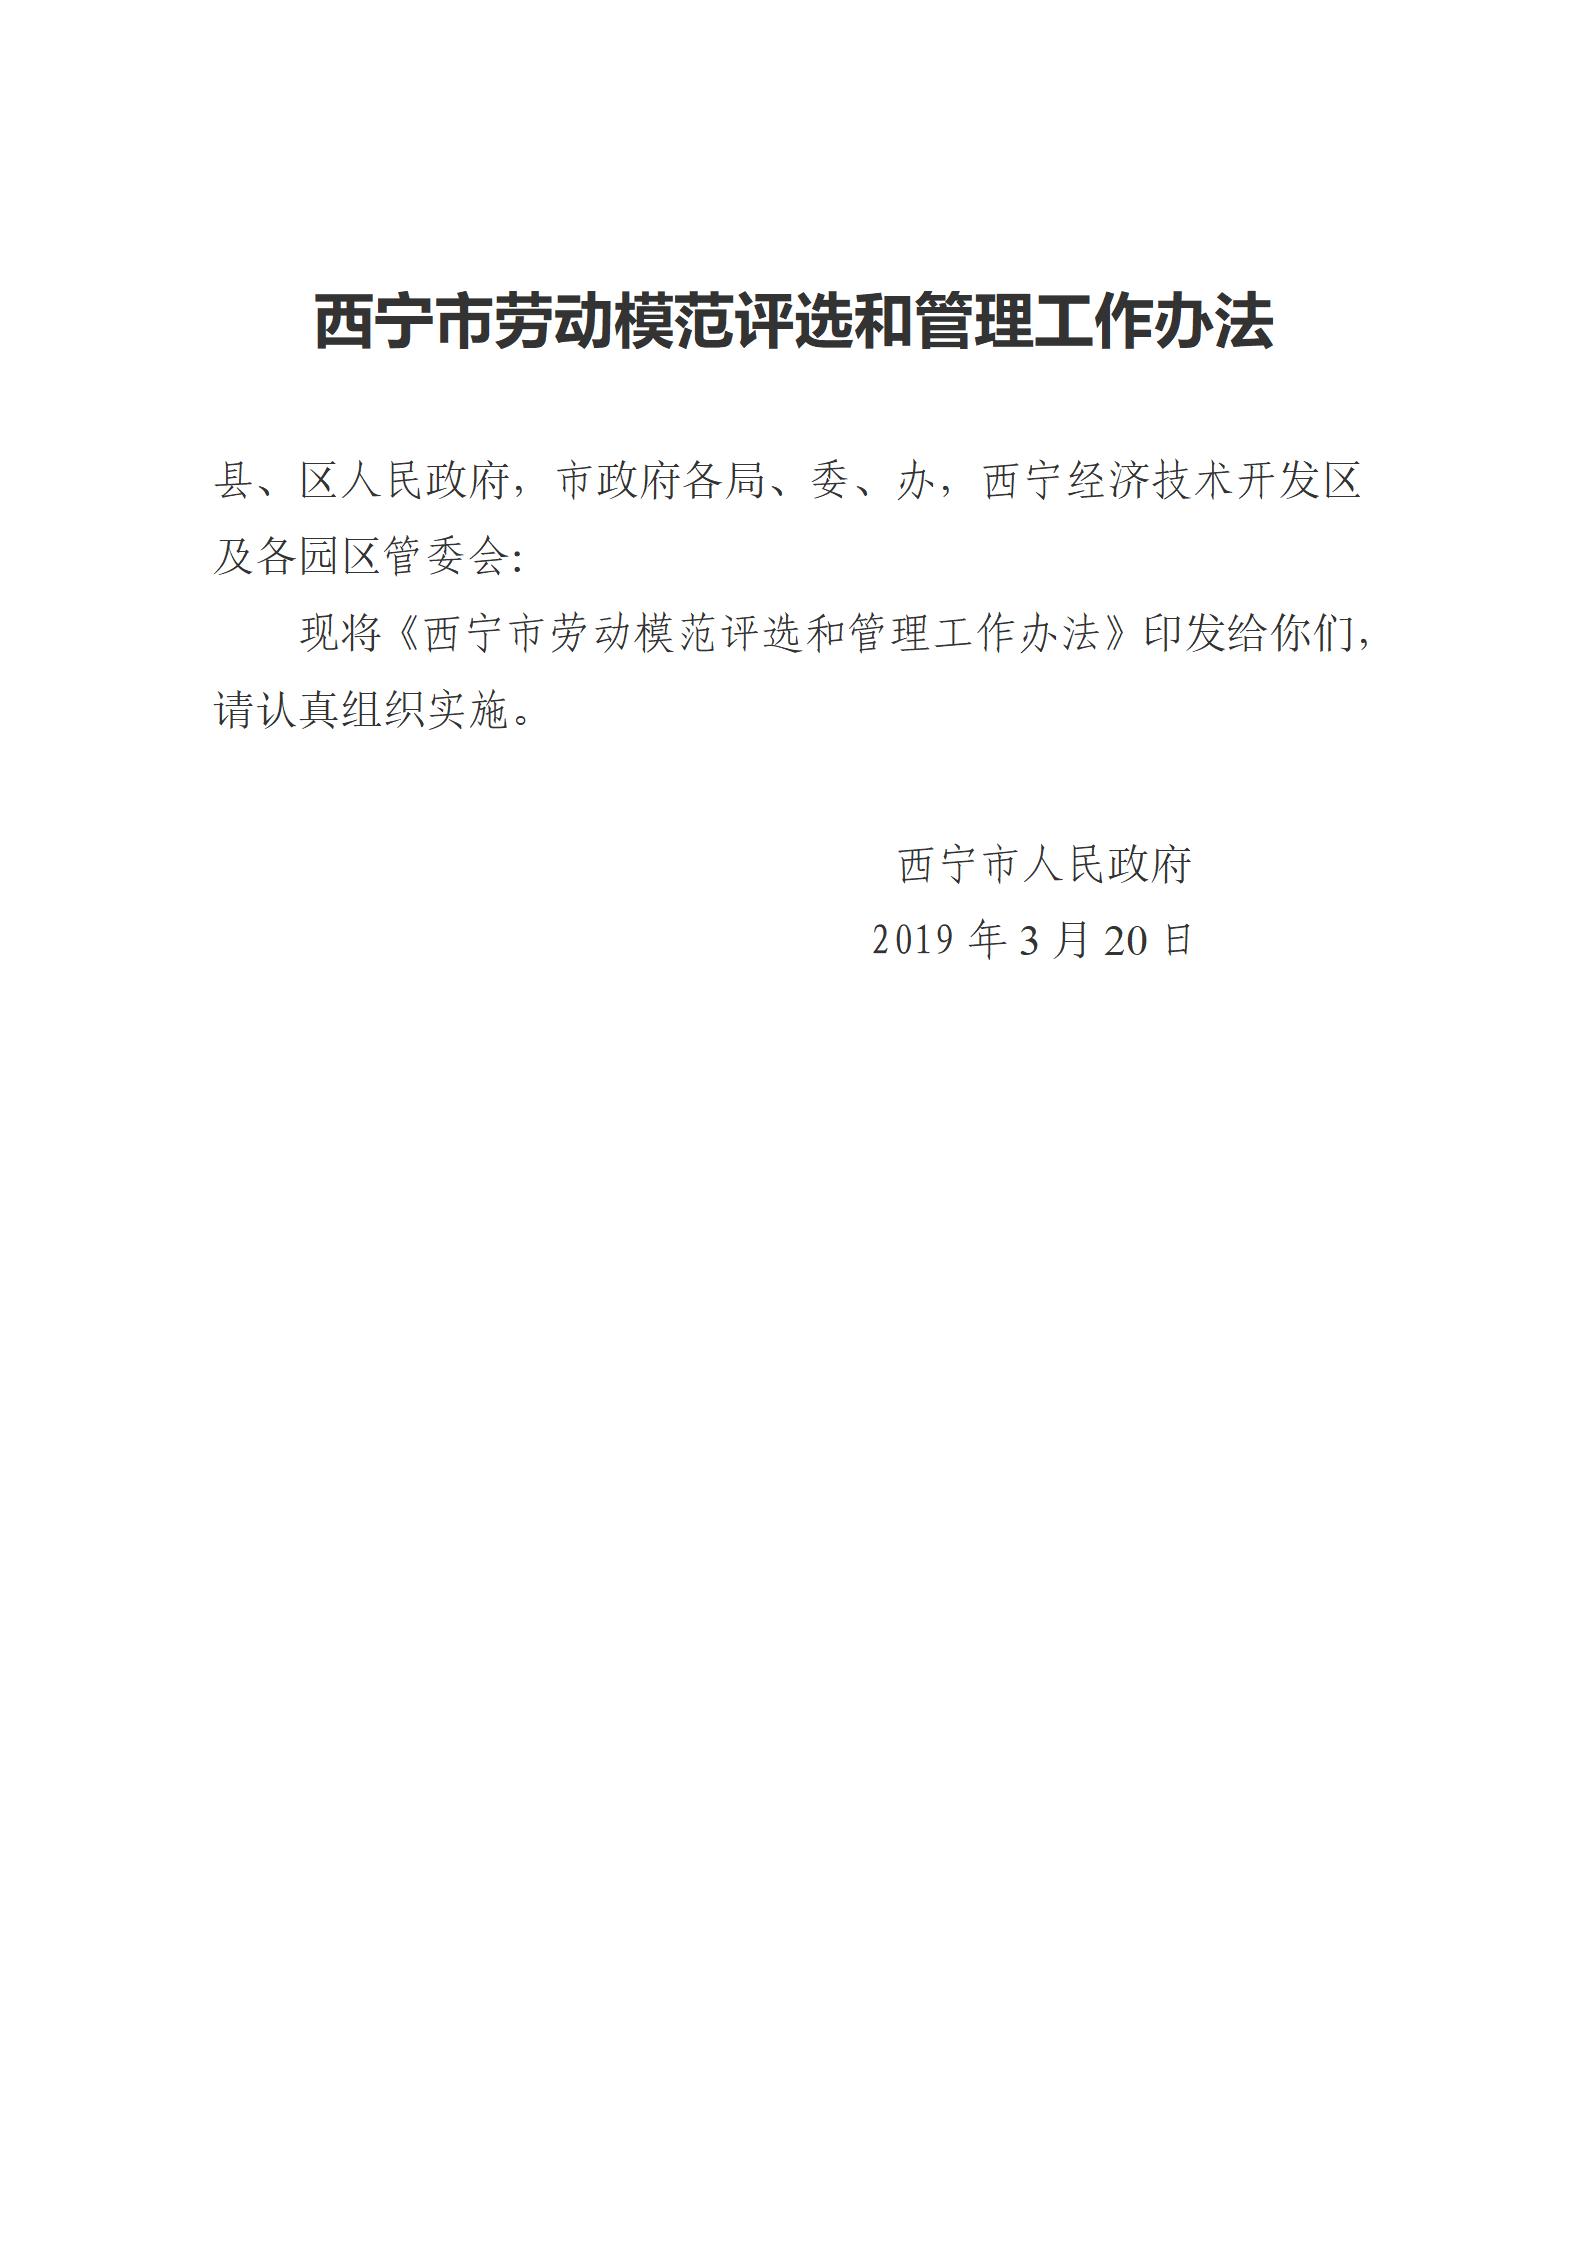 1.西宁市劳动模范评选和管理工作办法(1)_01.jpg